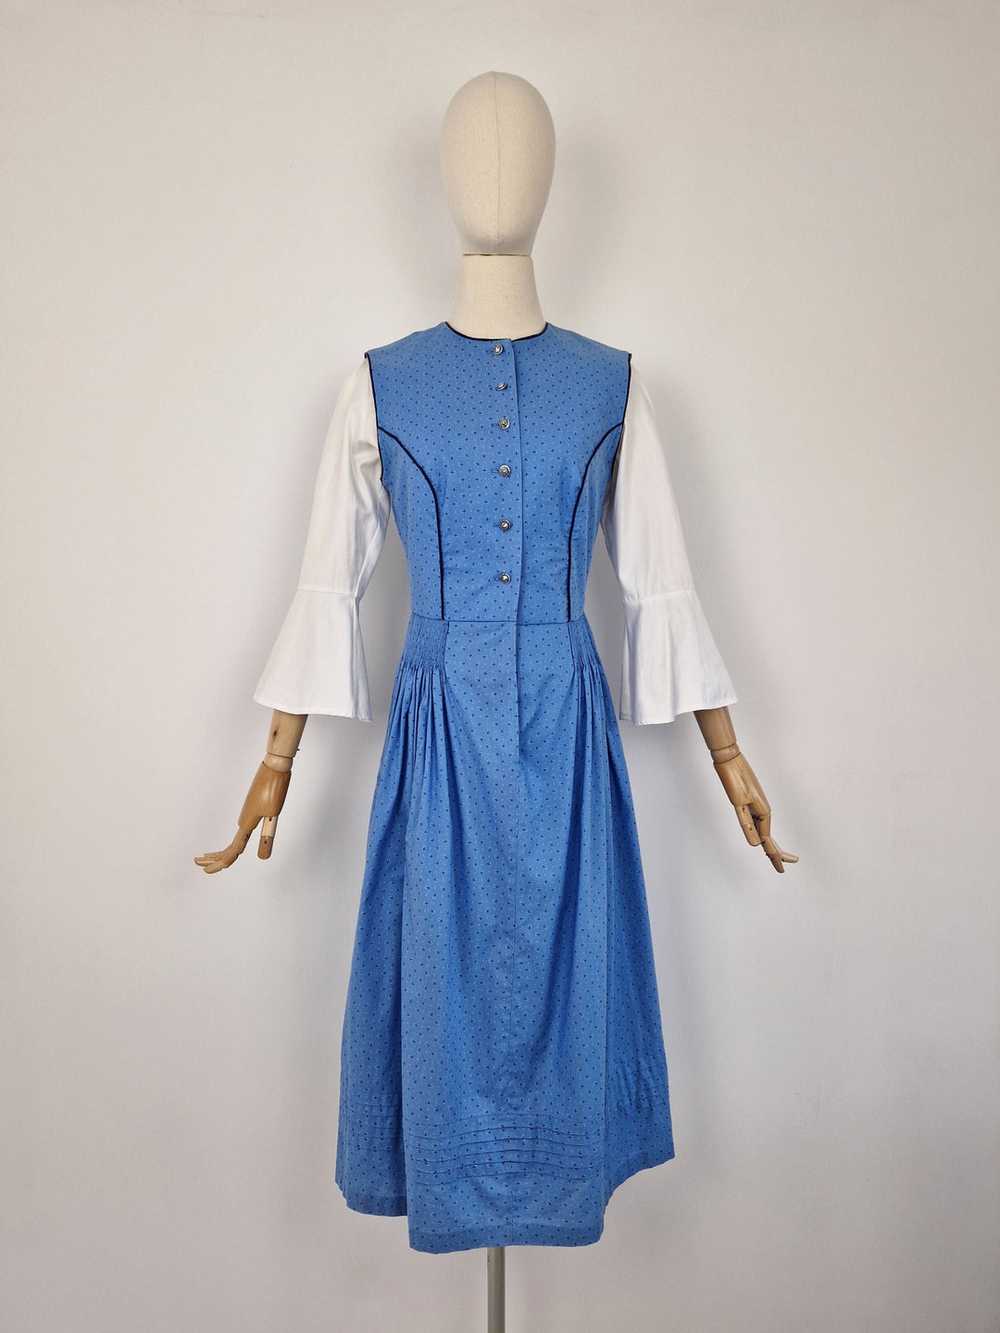 Vintage blue dirndl dress - image 7